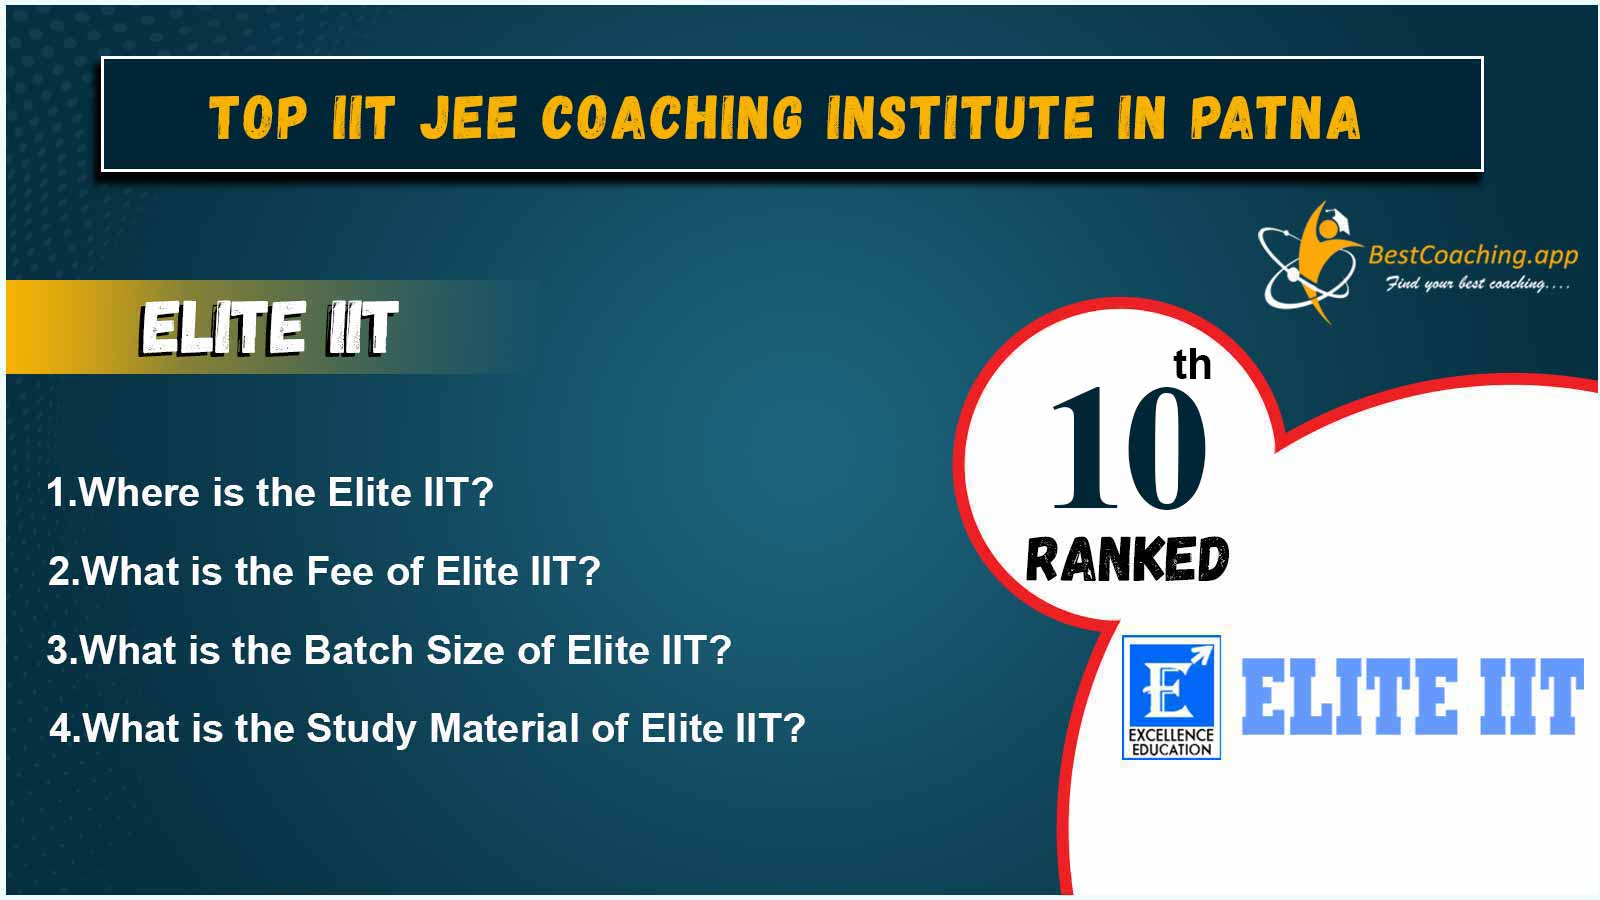 Top IIT JEE Coaching Institute In Patna